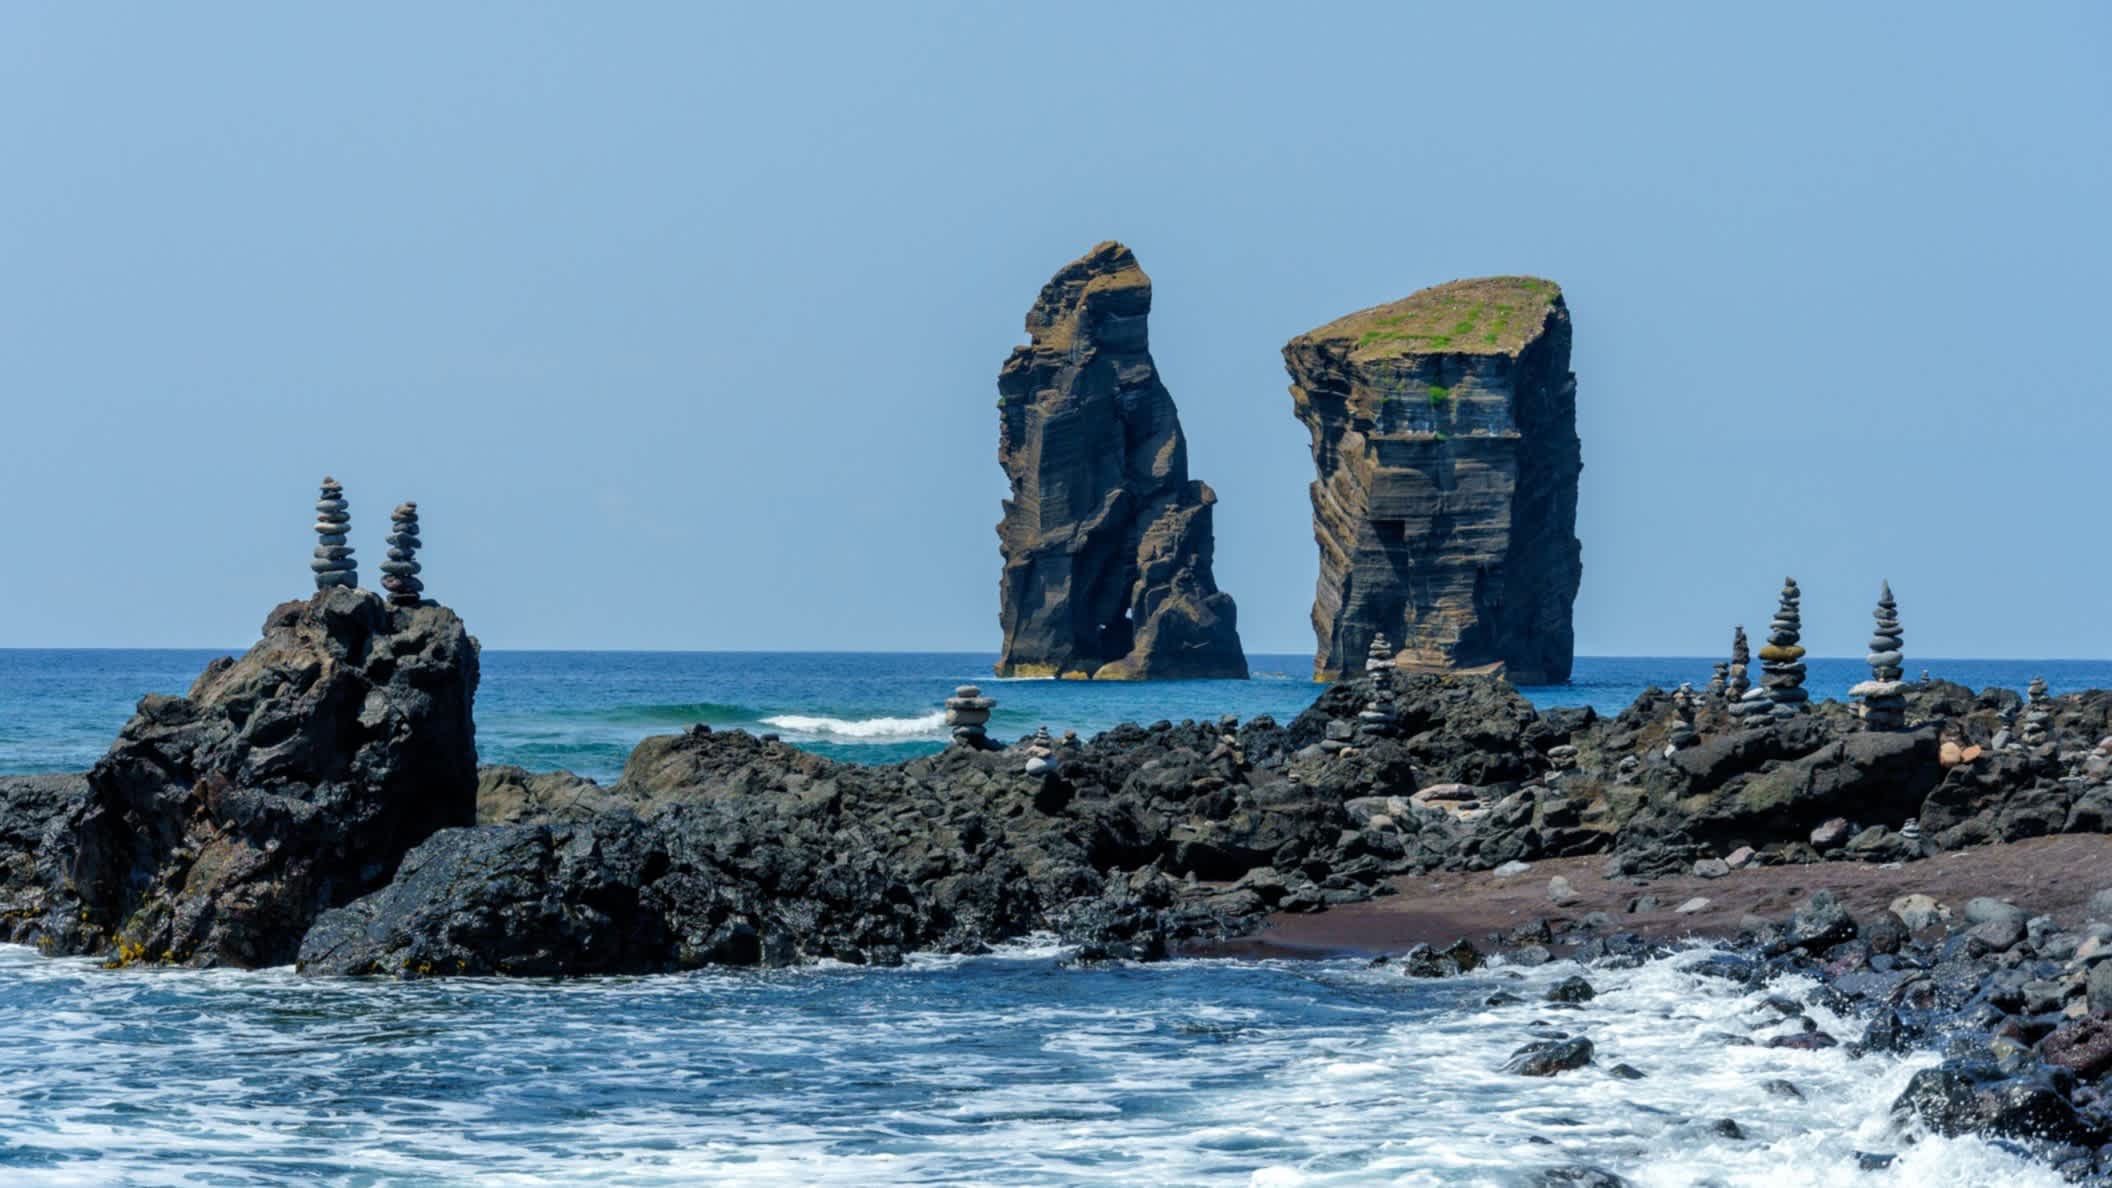 Vue des rochers sur la plage de Mosteiros sur l'île de Sao Miguel, aux Açores, au Portugal.

